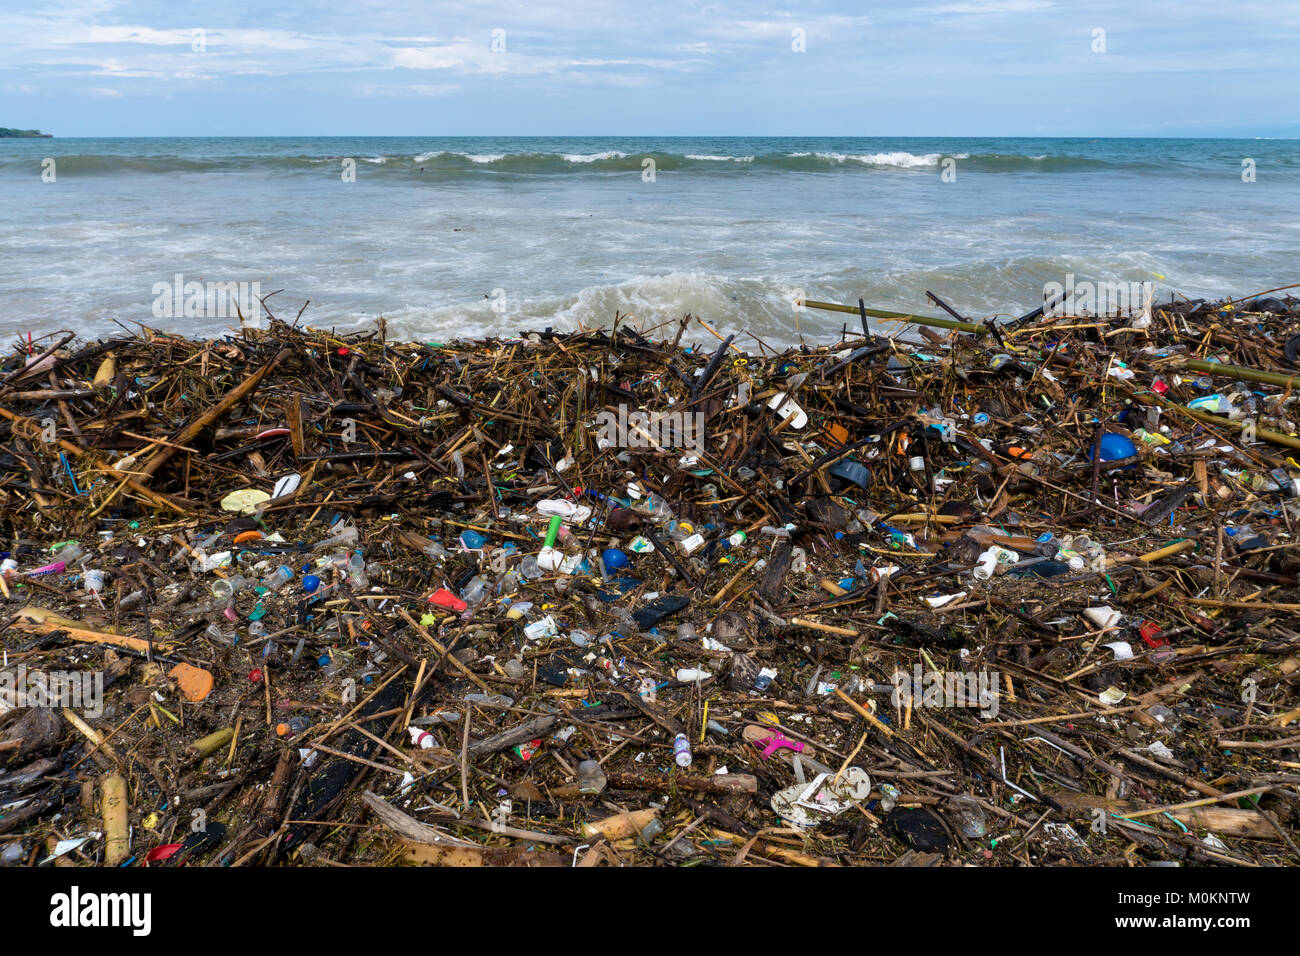 Concept de la pollution. Le problème d'ordures sur la plage causée par les personnes Banque D'Images